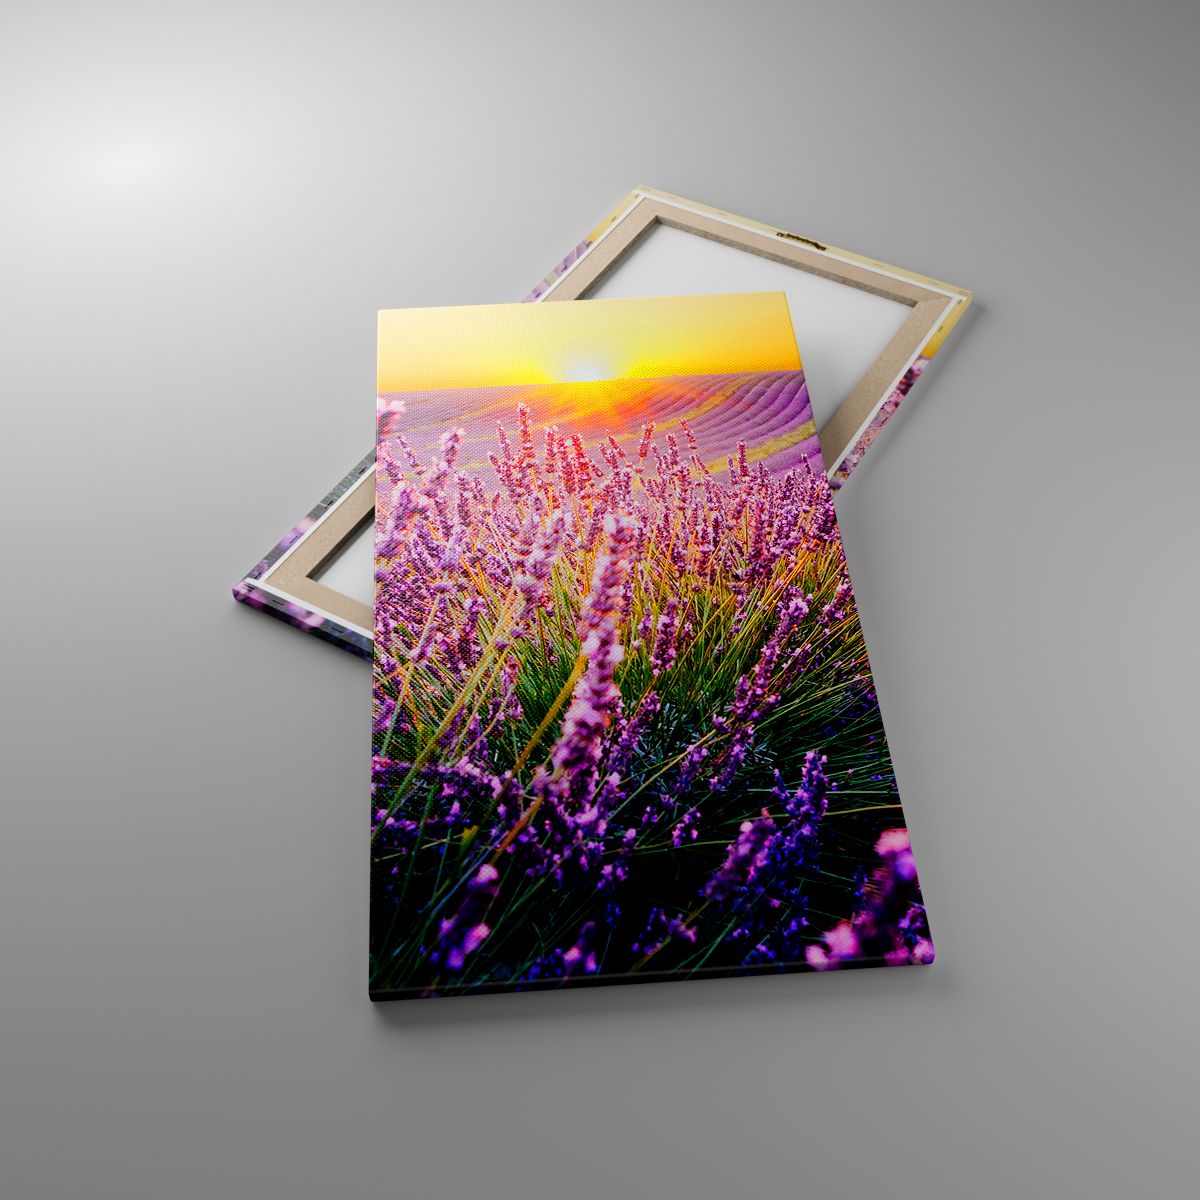 Billede på lærred Landskab, Billede på lærred Lavendelmark, Billede på lærred Provence, Billede på lærred Frankrig, Billede på lærred Natur